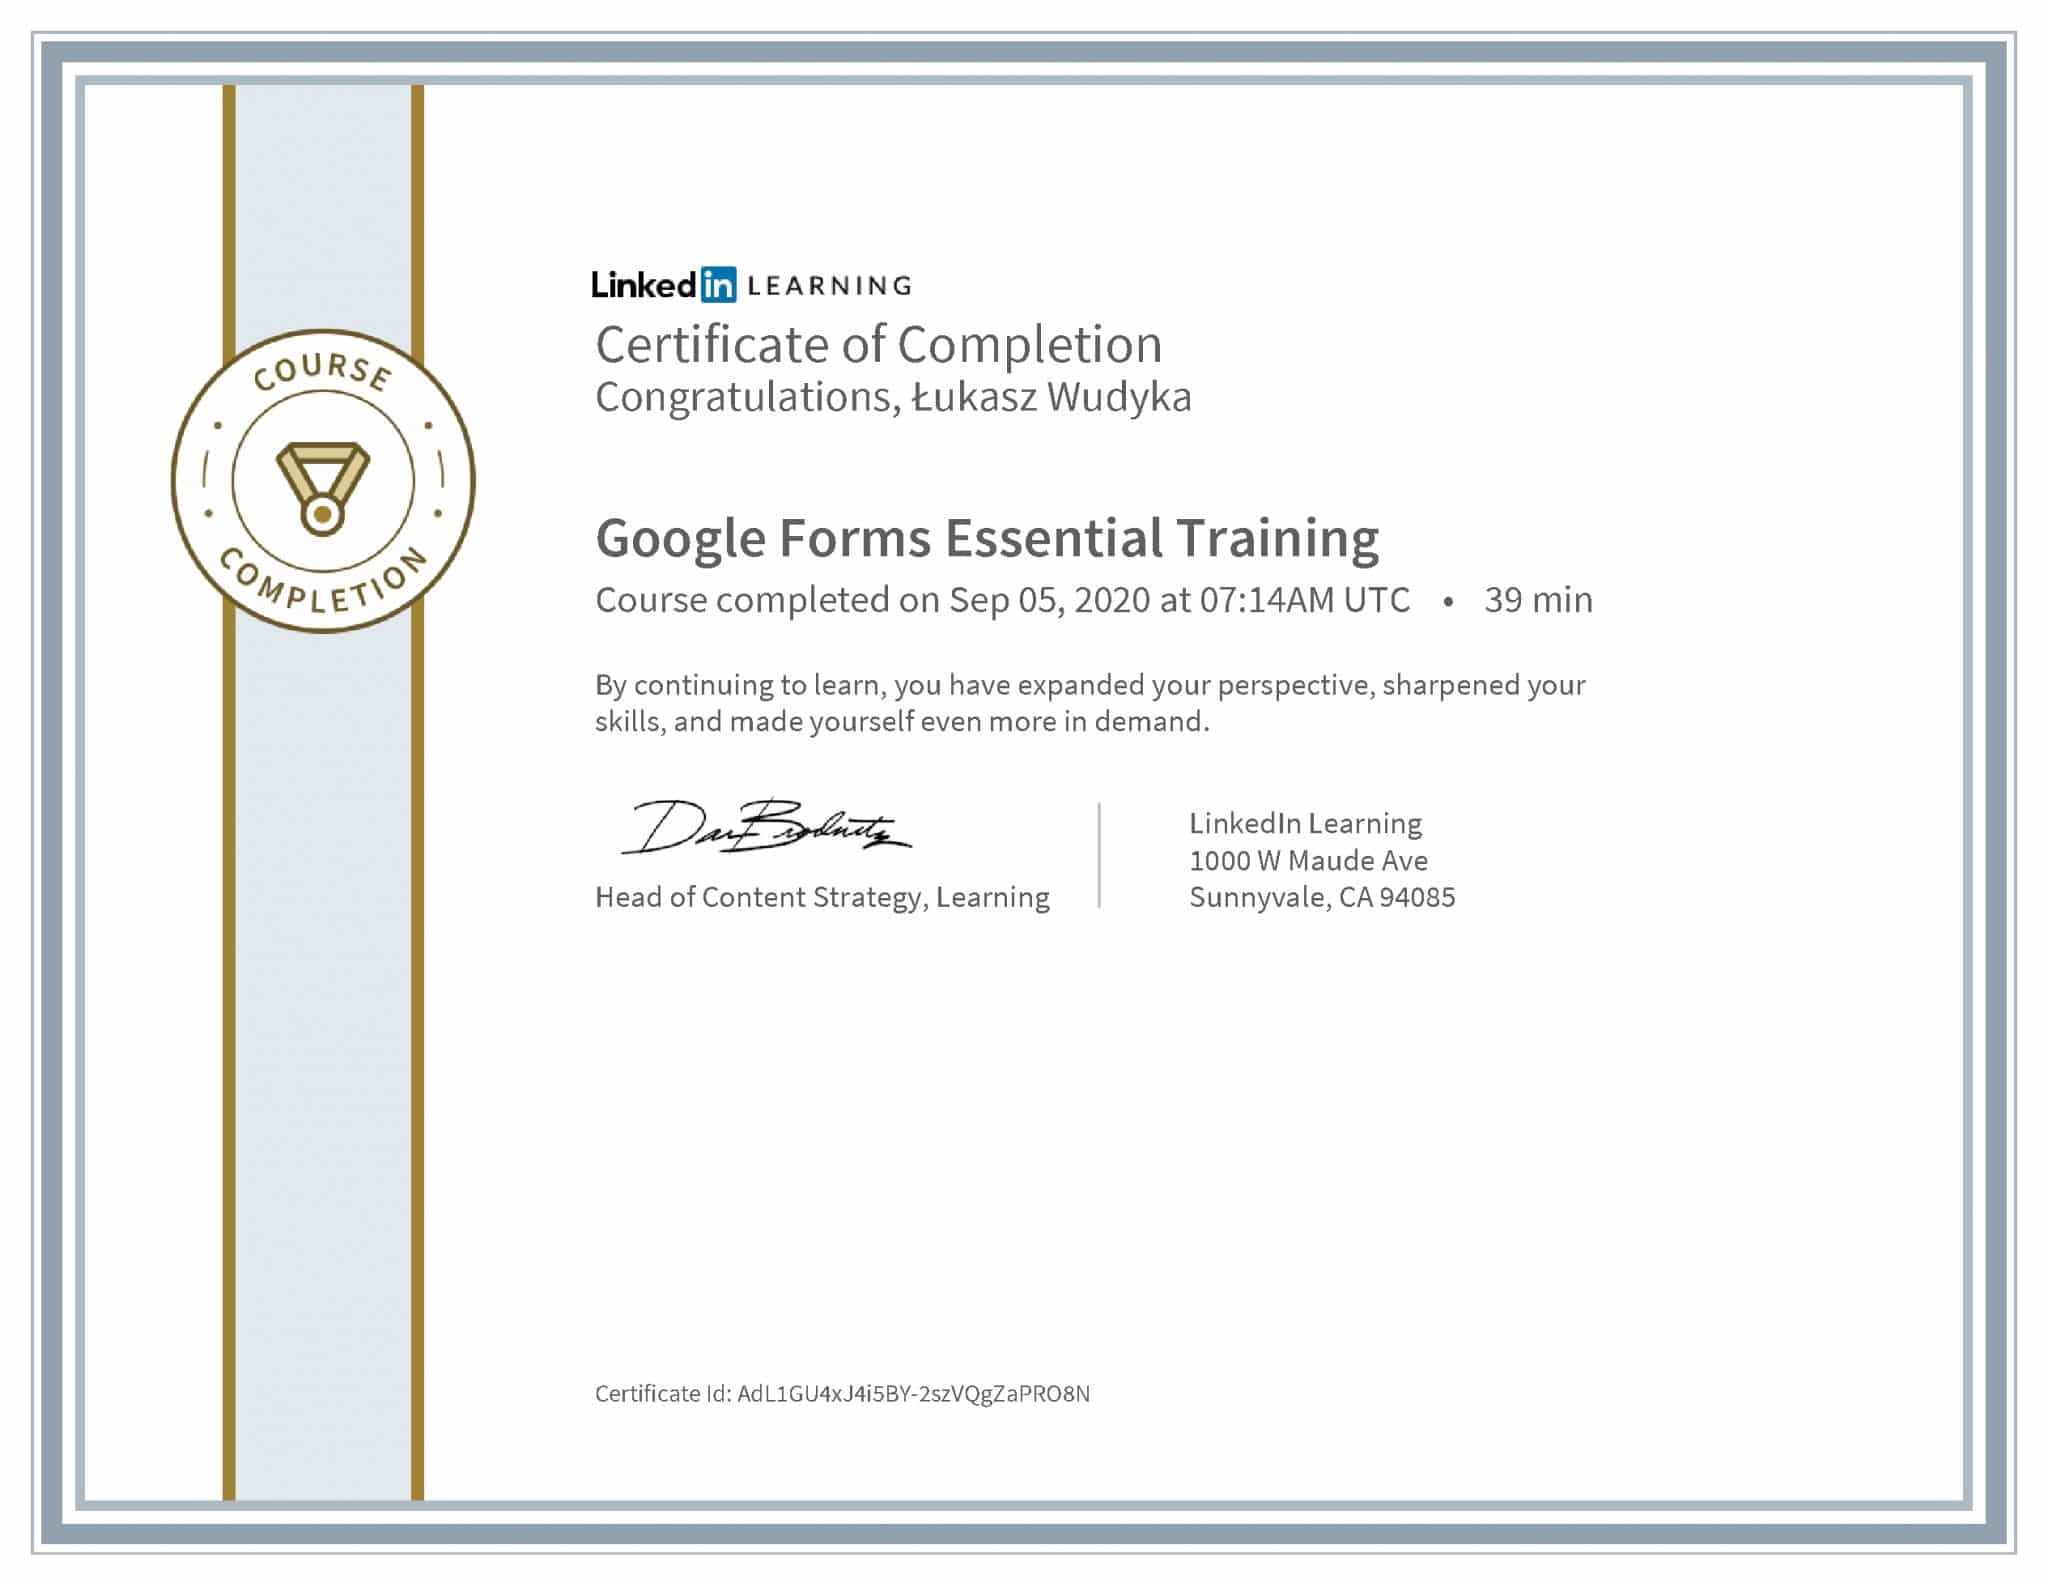 Łukasz Wudyka certyfikat LinkedIn Google Forms Essential Training